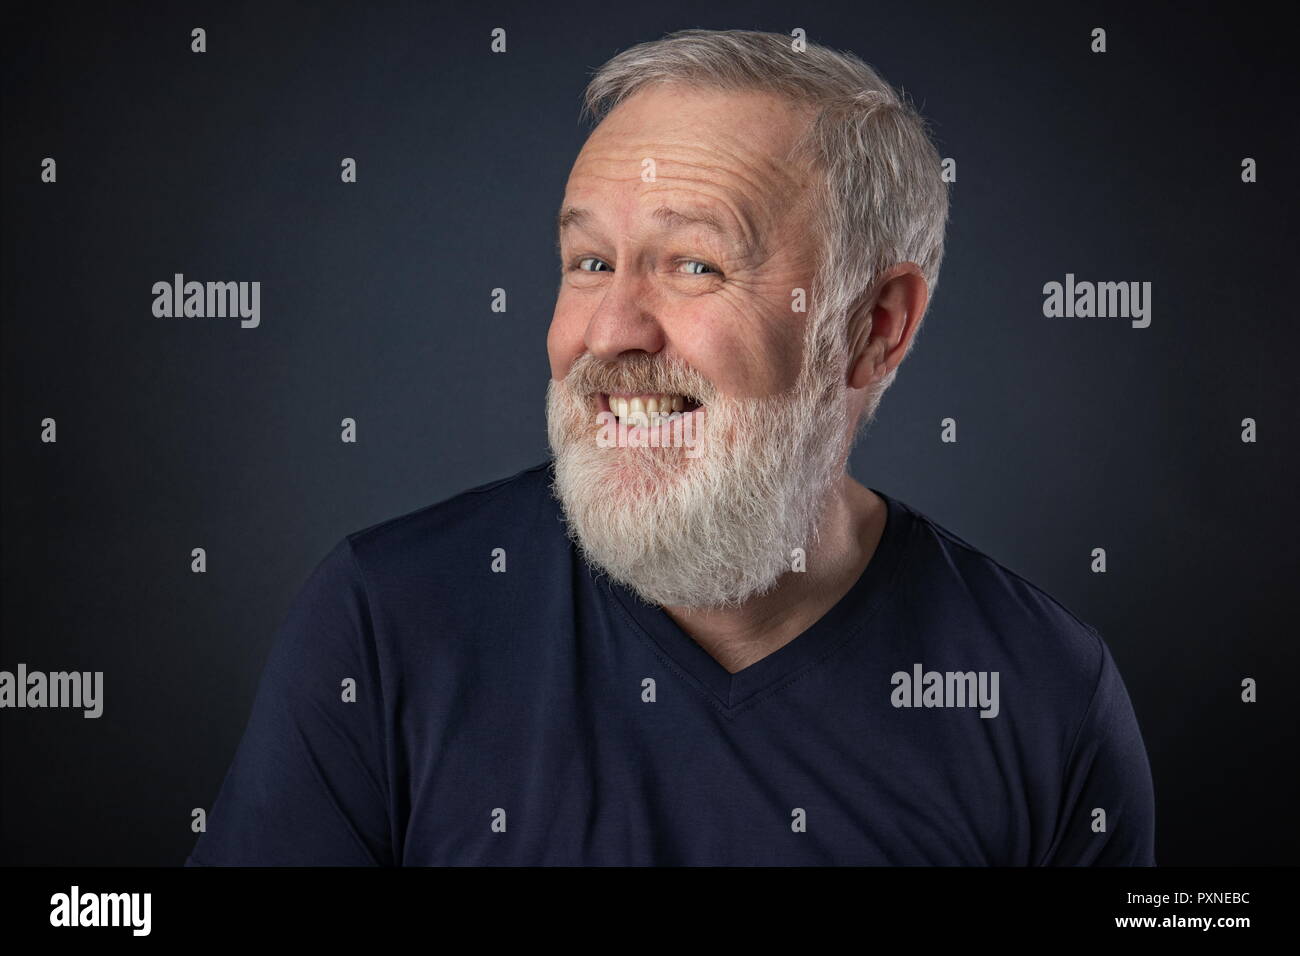 Portrait de vieil homme à barbe grise sur fond bleu de jouer et faire semblant de rire Banque D'Images